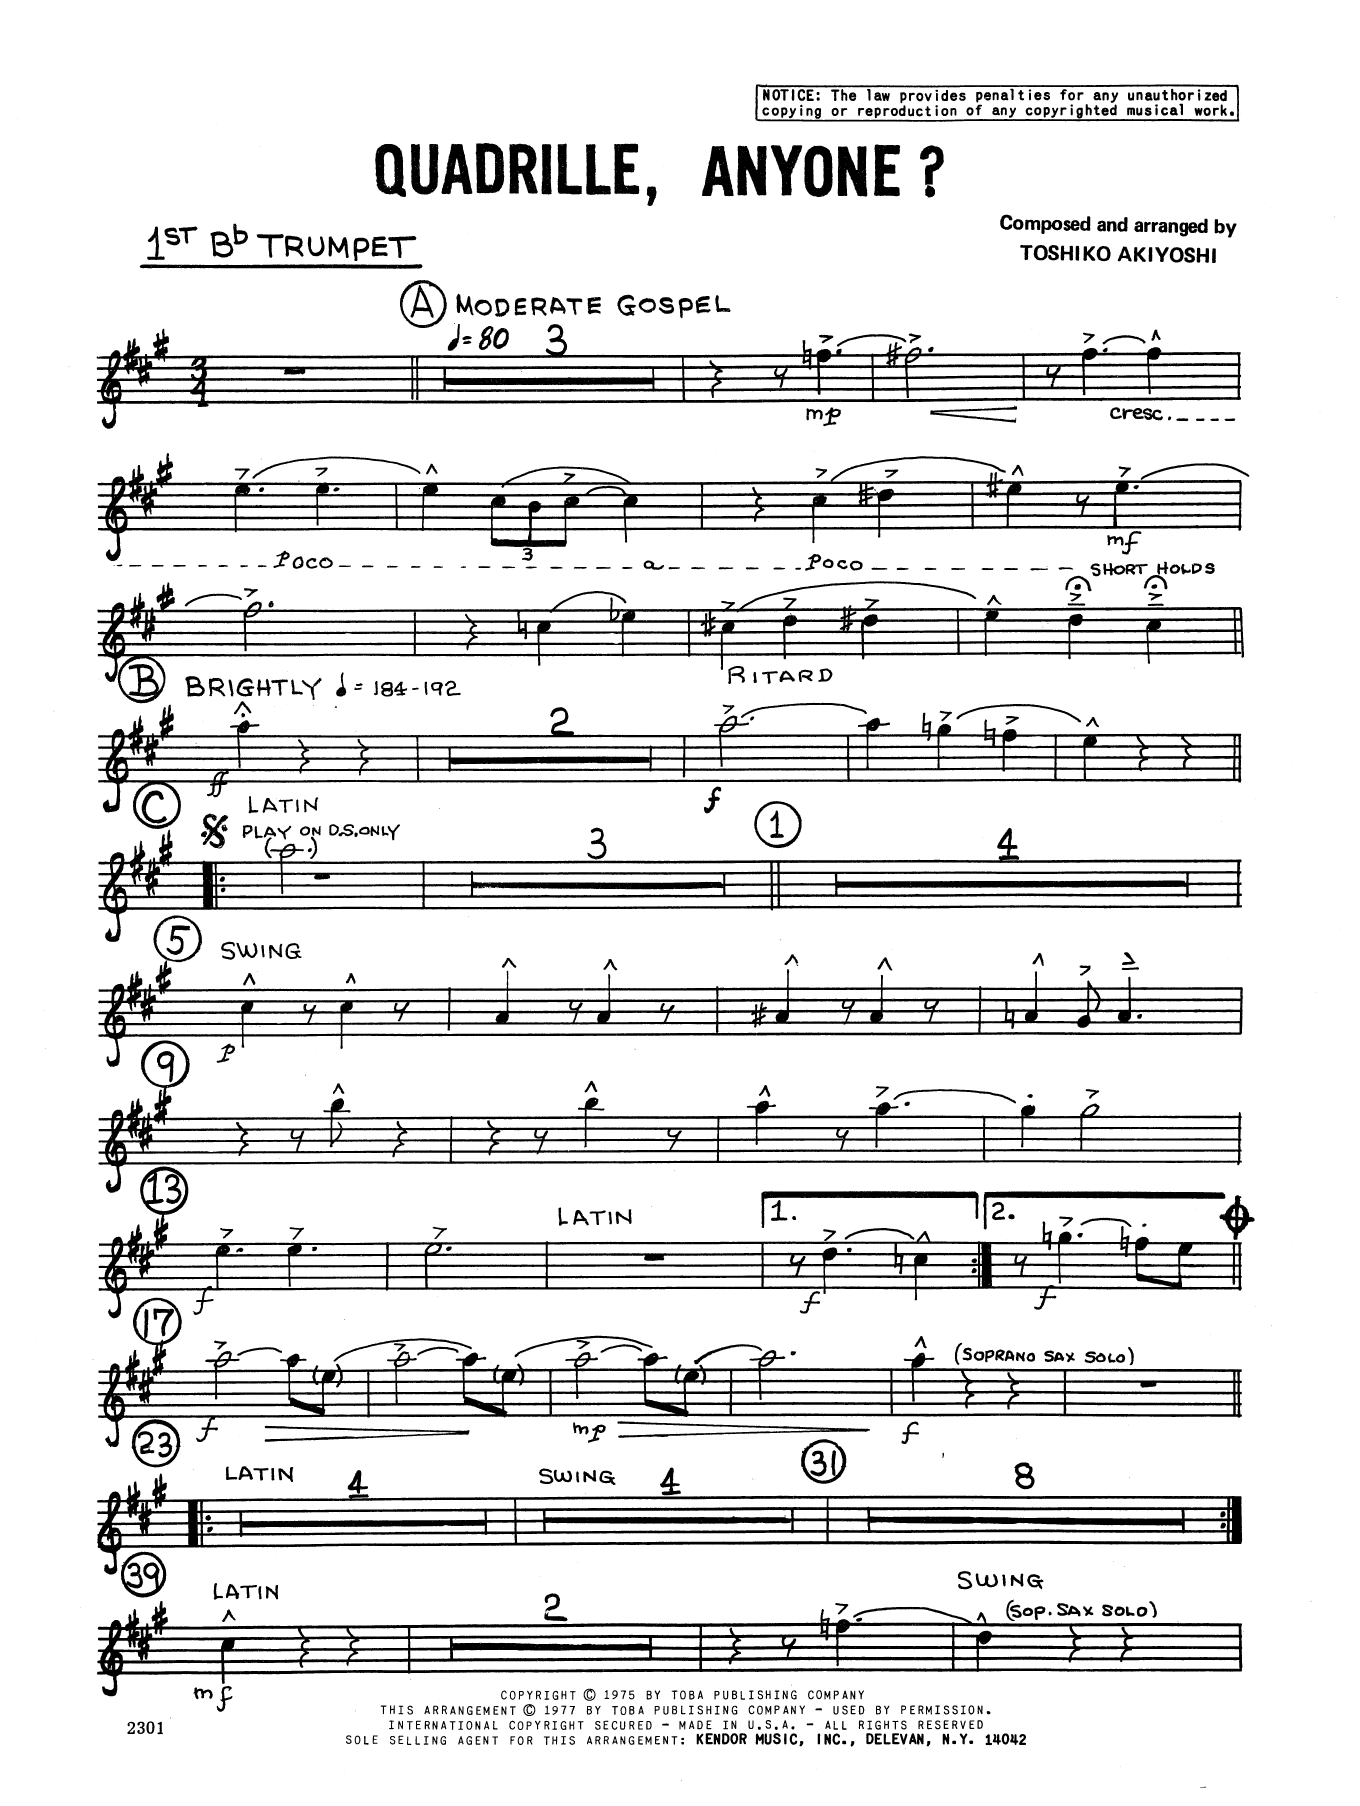 Download Toshiko Akiyoshi Quadrille, Anyone? - 1st Bb Trumpet Sheet Music